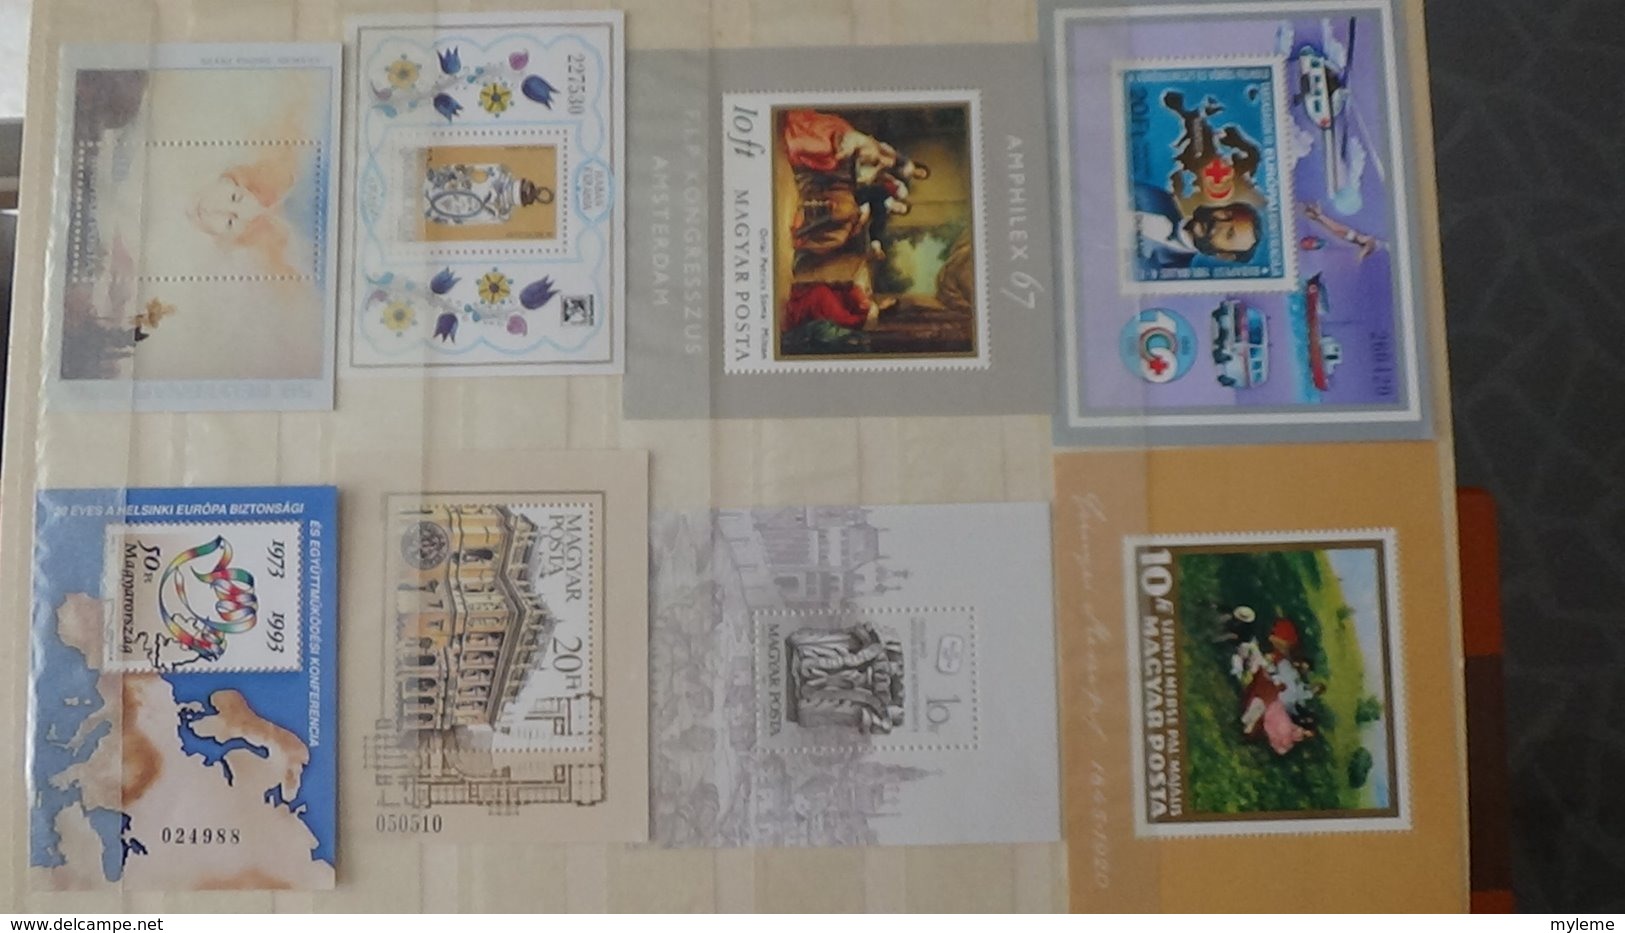 Collection de timbres, carnets et blocs ** de différents pays. A saisir !!!